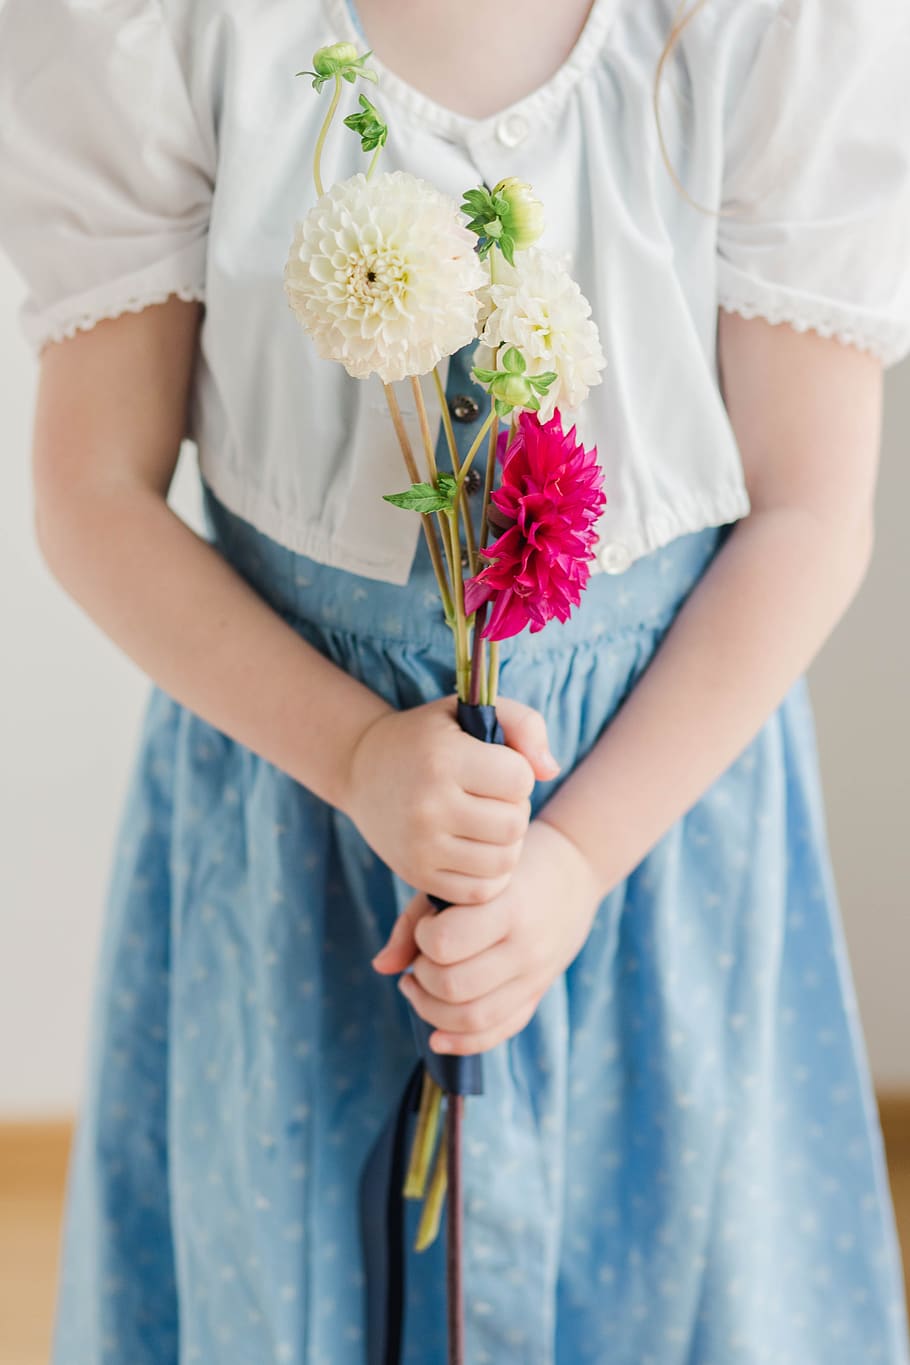 vestido austriaco, dalias, niña con flores, rojo, blanco, niño, dirndl, retrato, flor, vestido azul